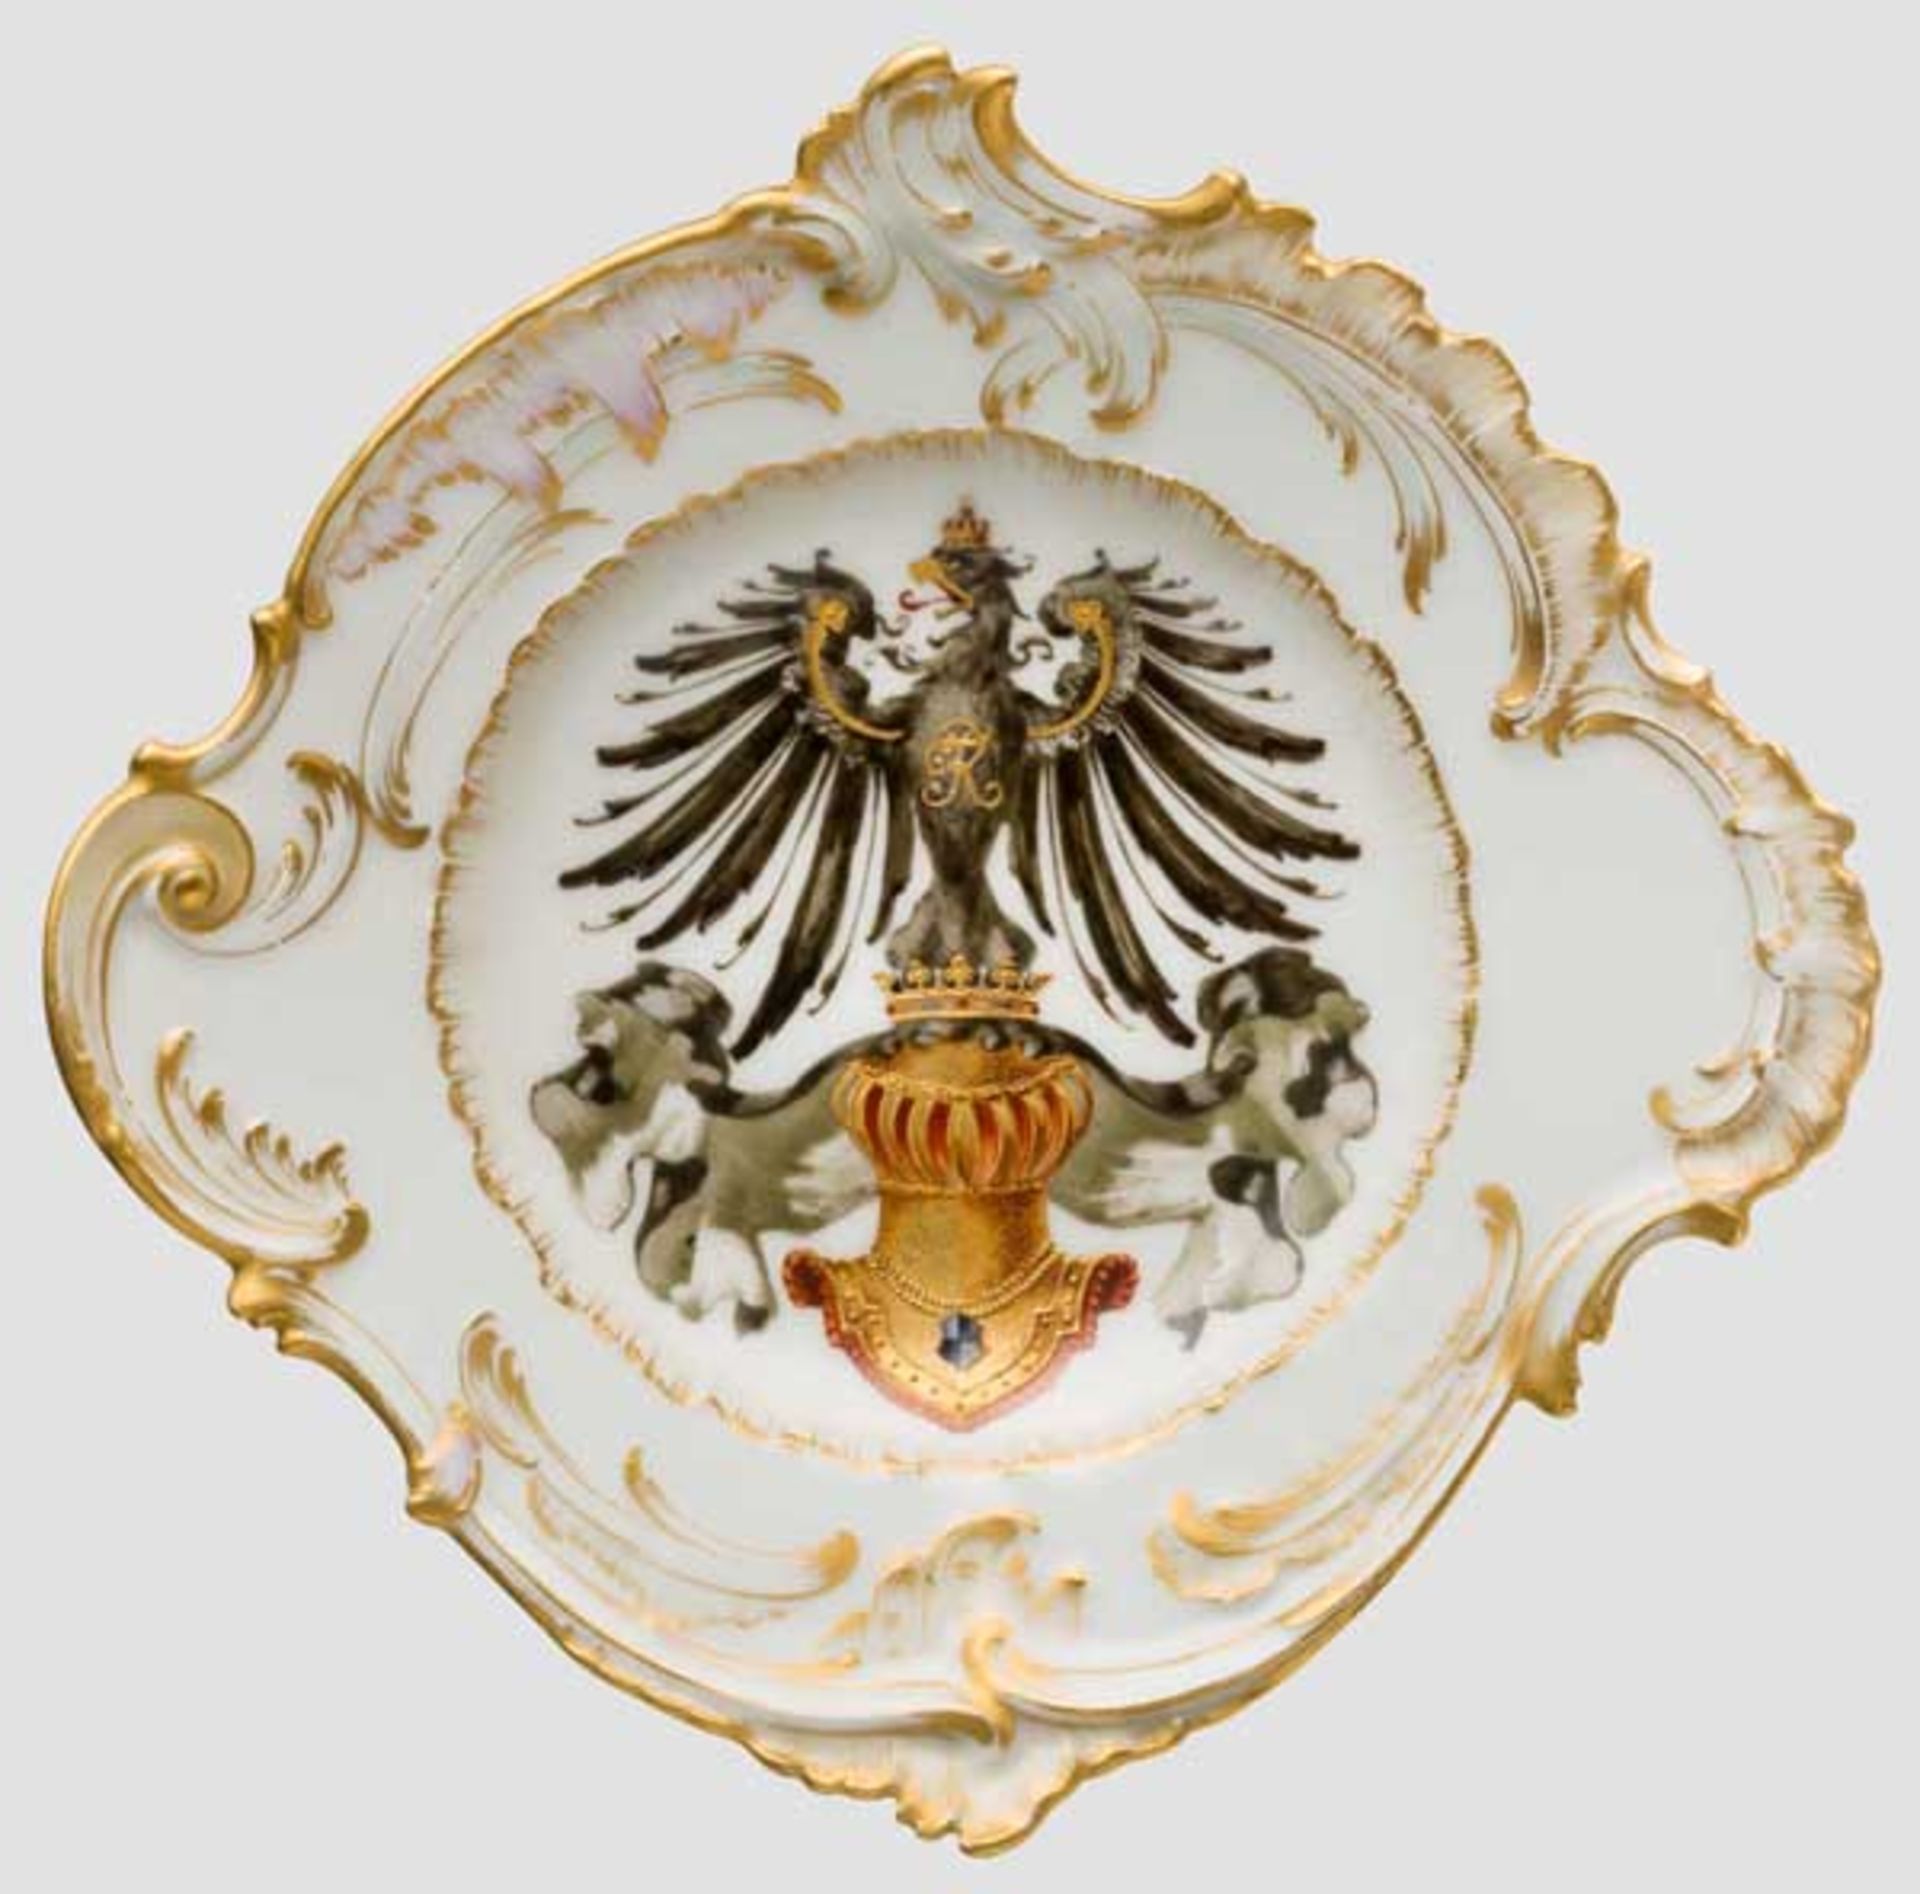 KPM-Schauteller mit Wappen des Hauses Hohenzollern Weißes, glasiertes Porzellan mit geschweiftem